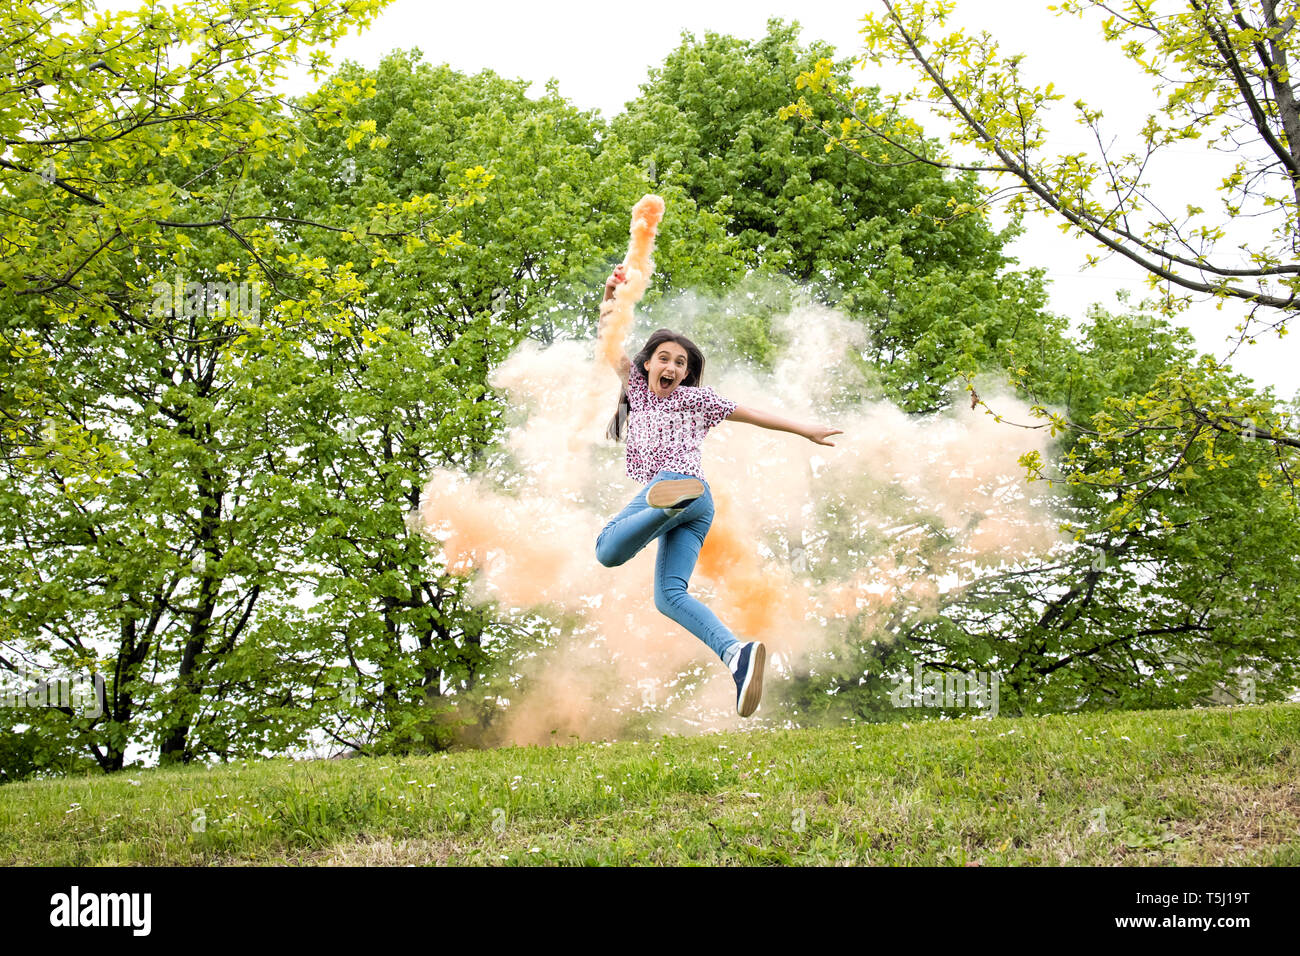 Ágil emocionado joven con un humo de color flare correr y saltar de alegría en un parque o jardín arbolado Foto de stock